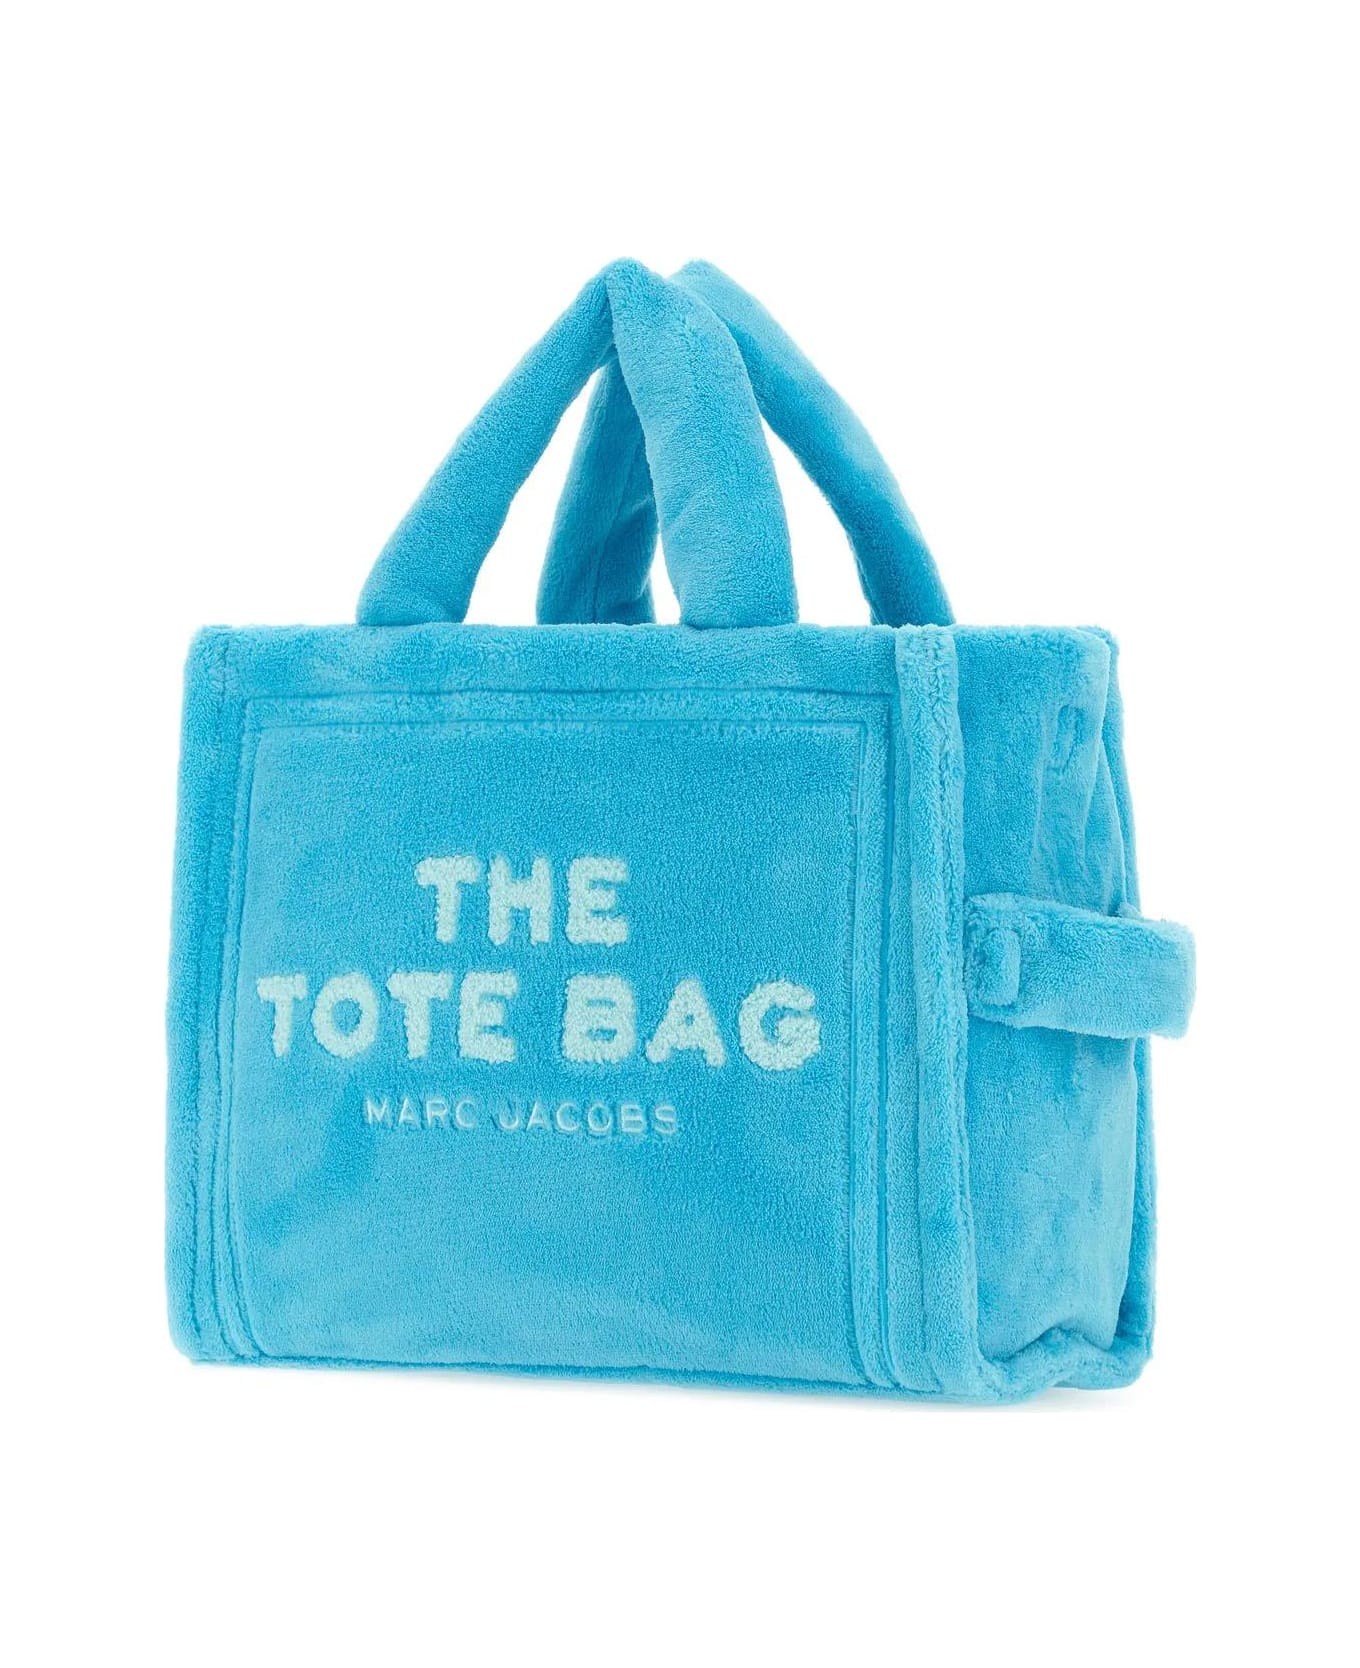 Marc Jacobs The Terry Tote Bag Handbag - POOL